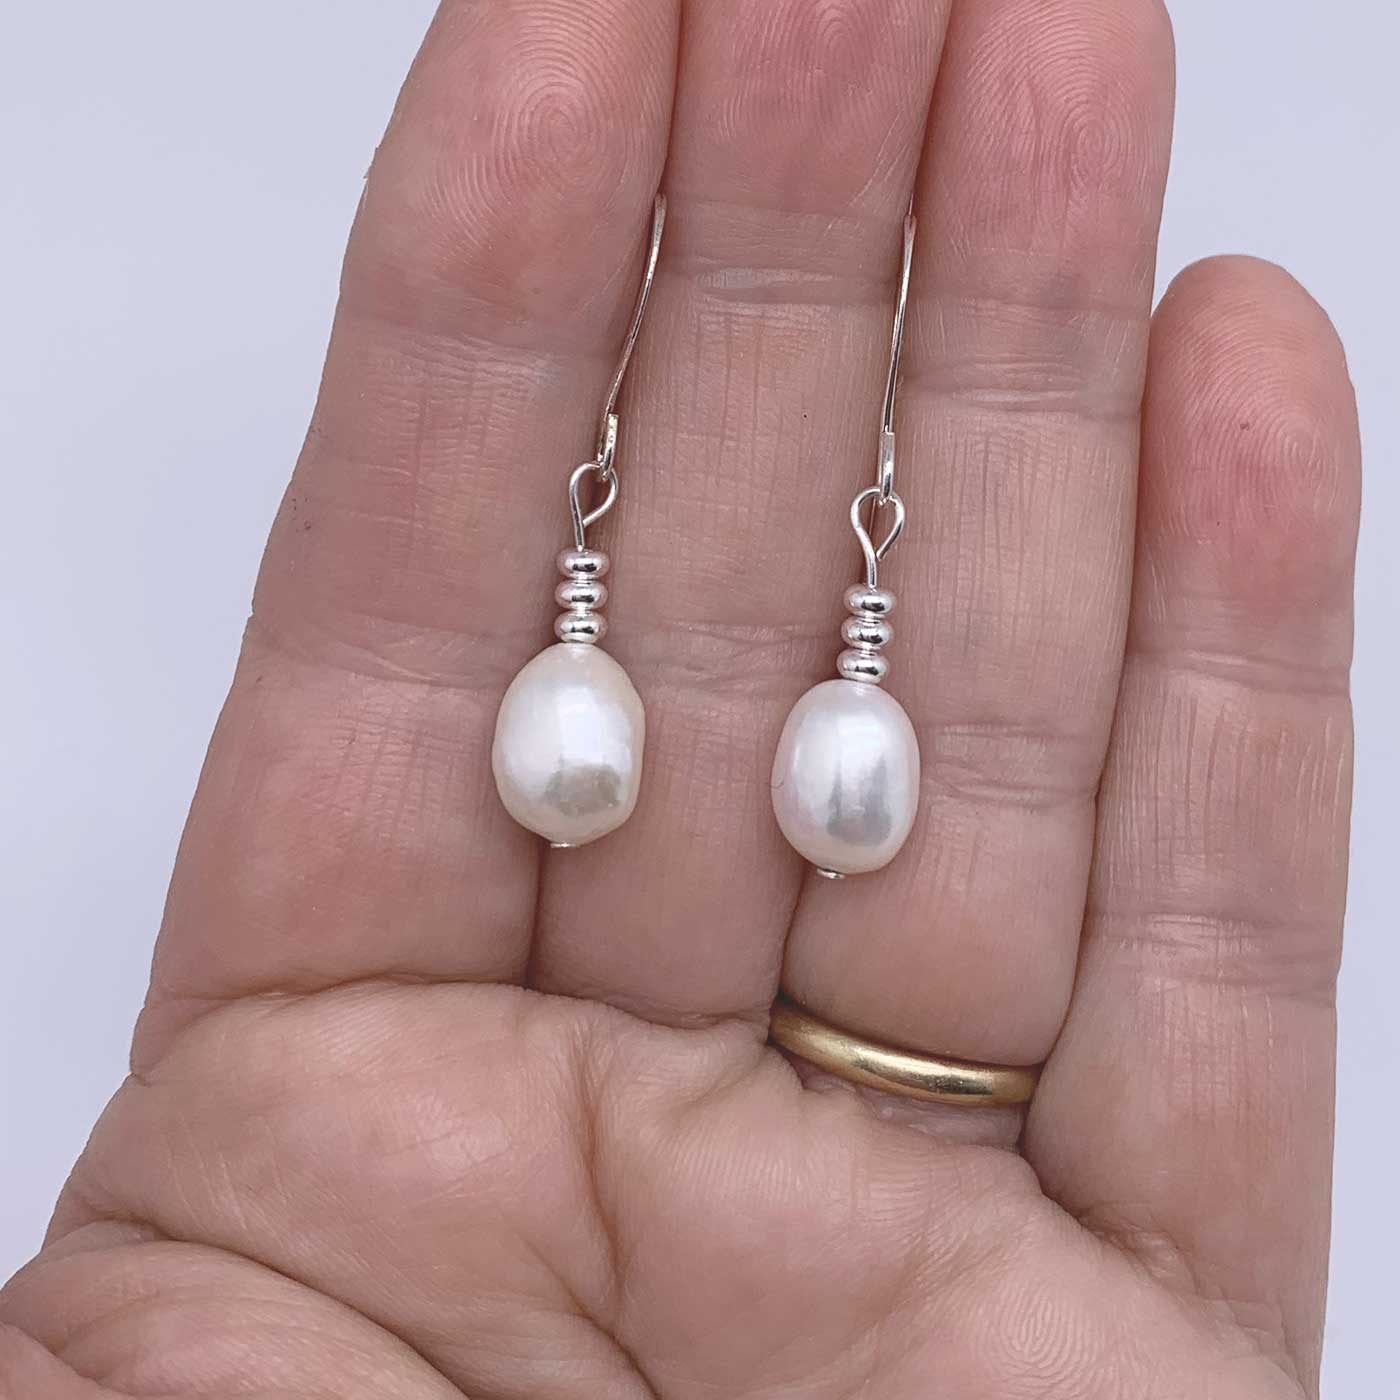 Sophie Monet Pearl Egg Earrings | Garmentory